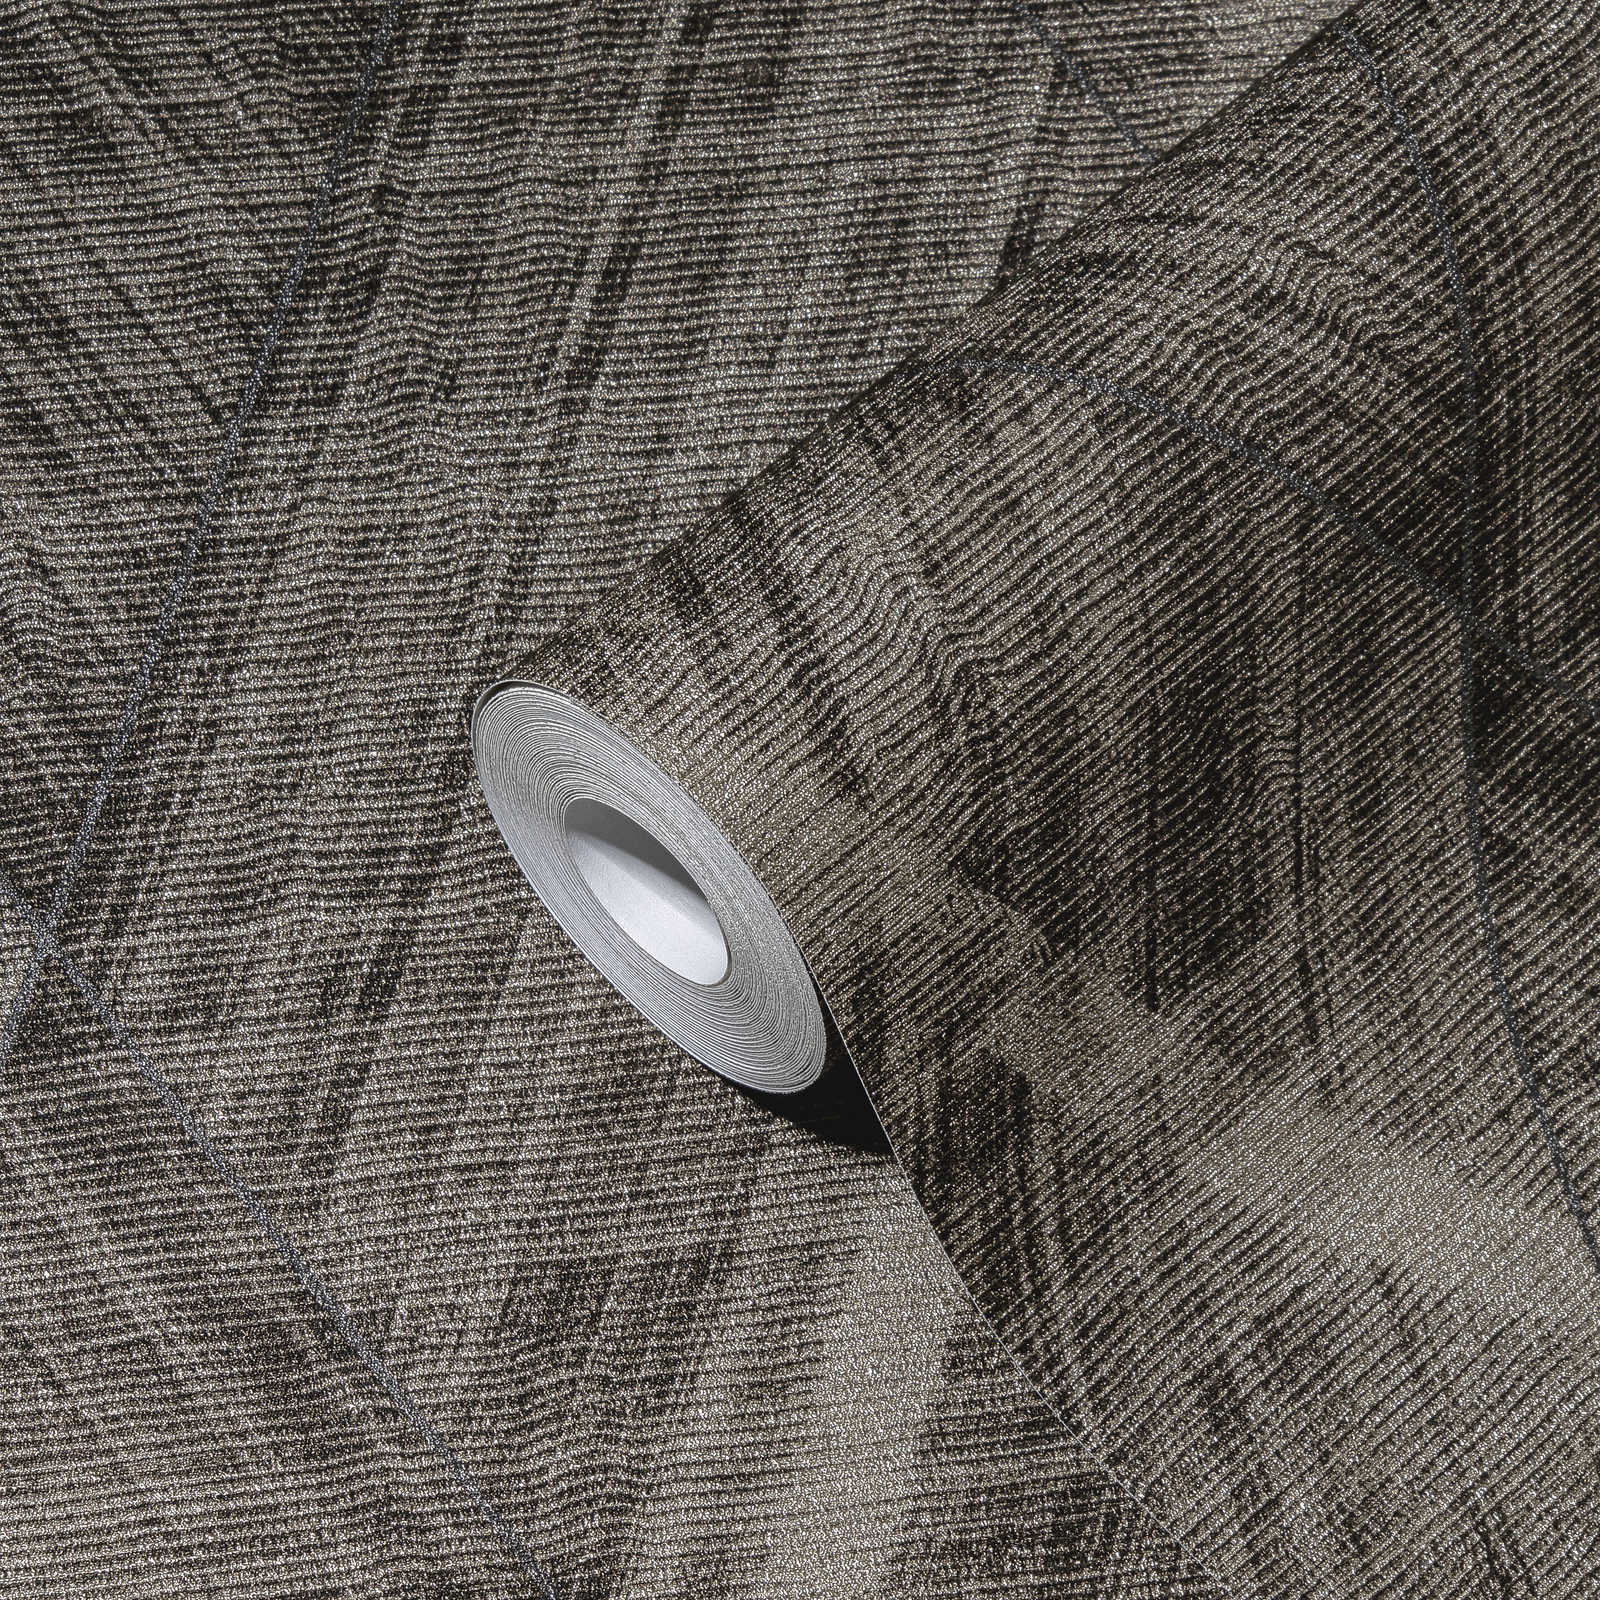             Textiloptik Tapete mit Rauten Muster – Metallic, Grau
        